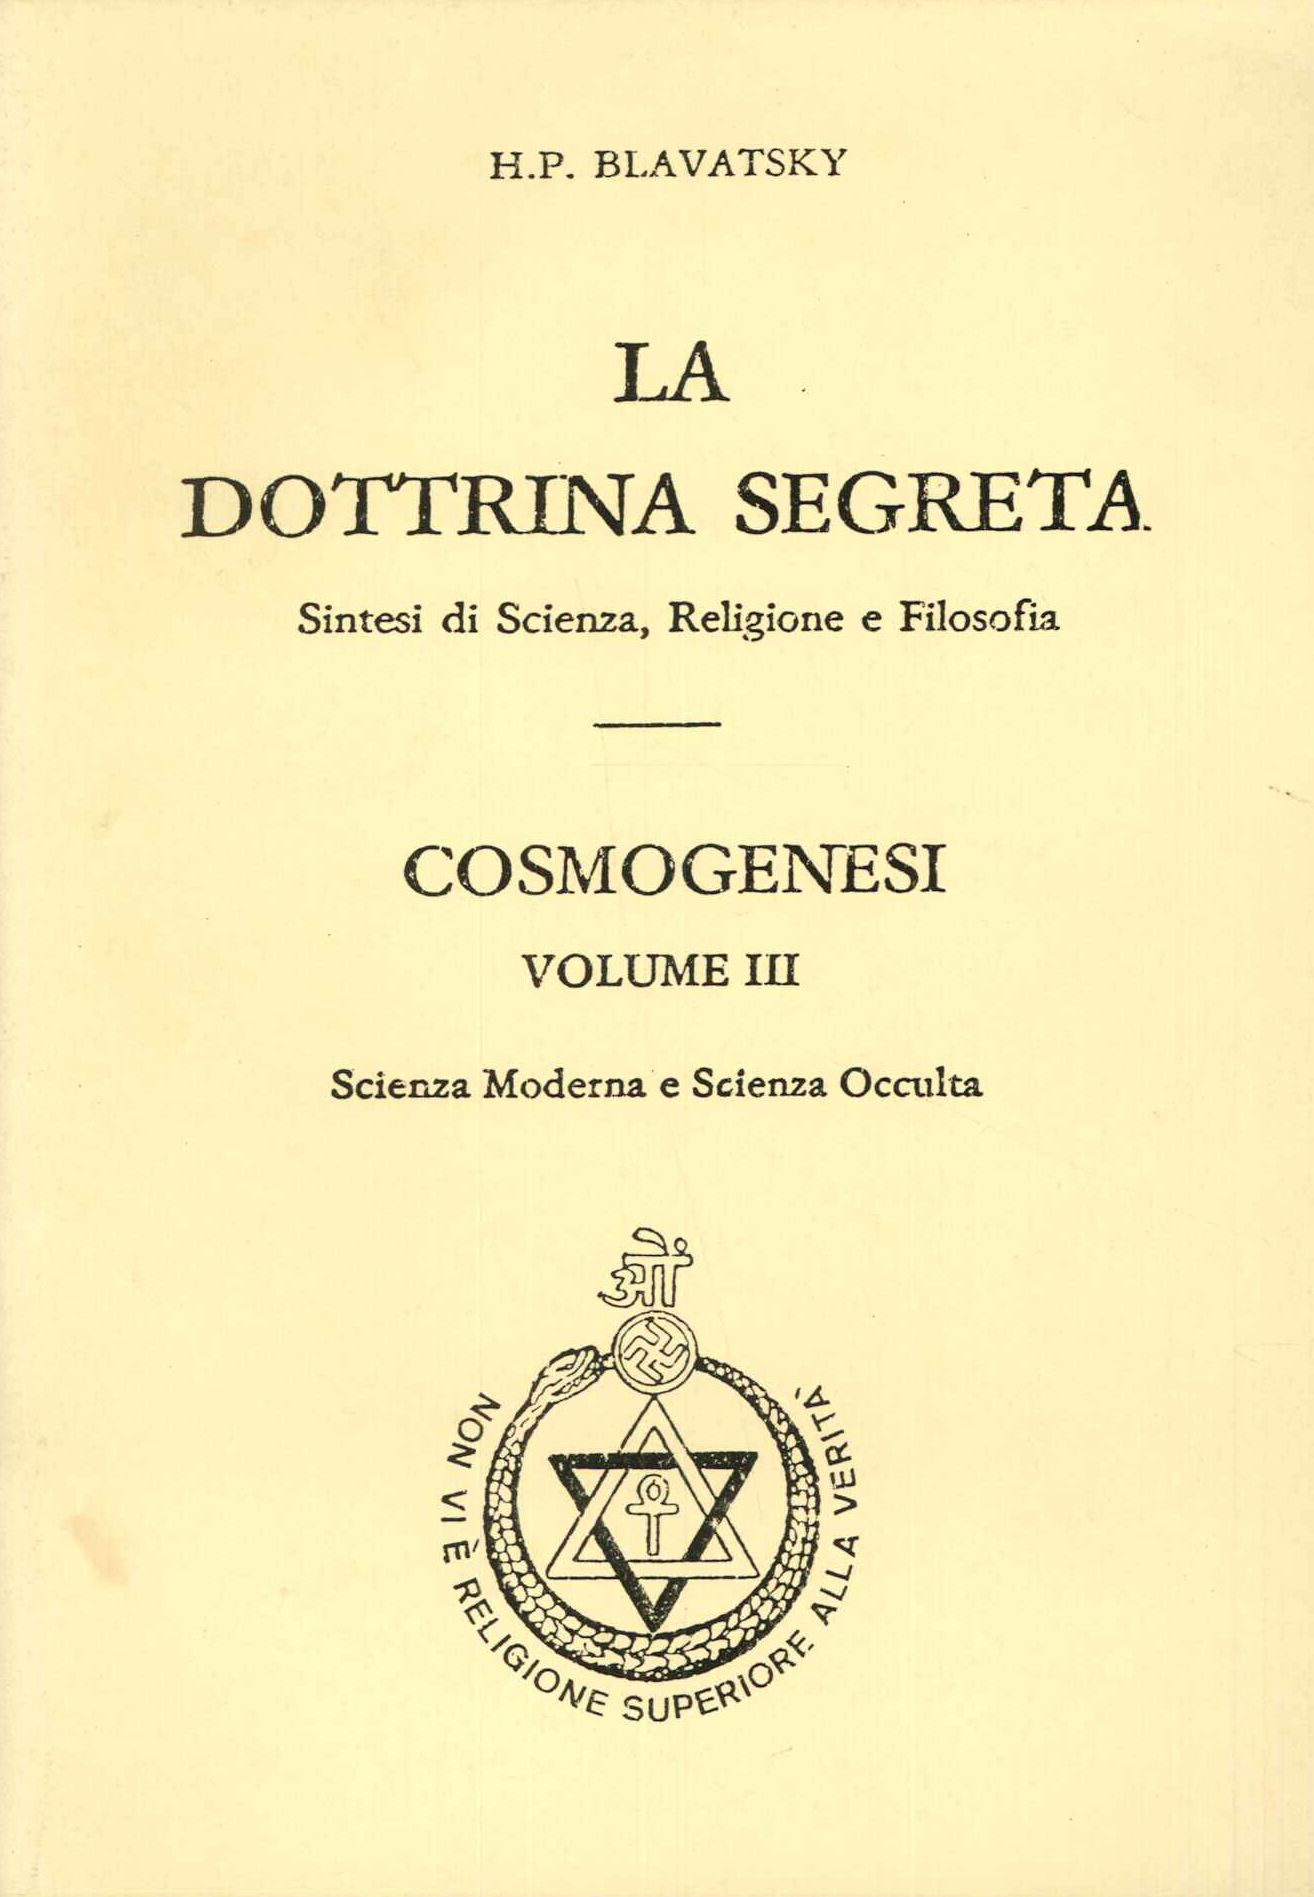 La dottrina segreta cosmogenesi vol.III°